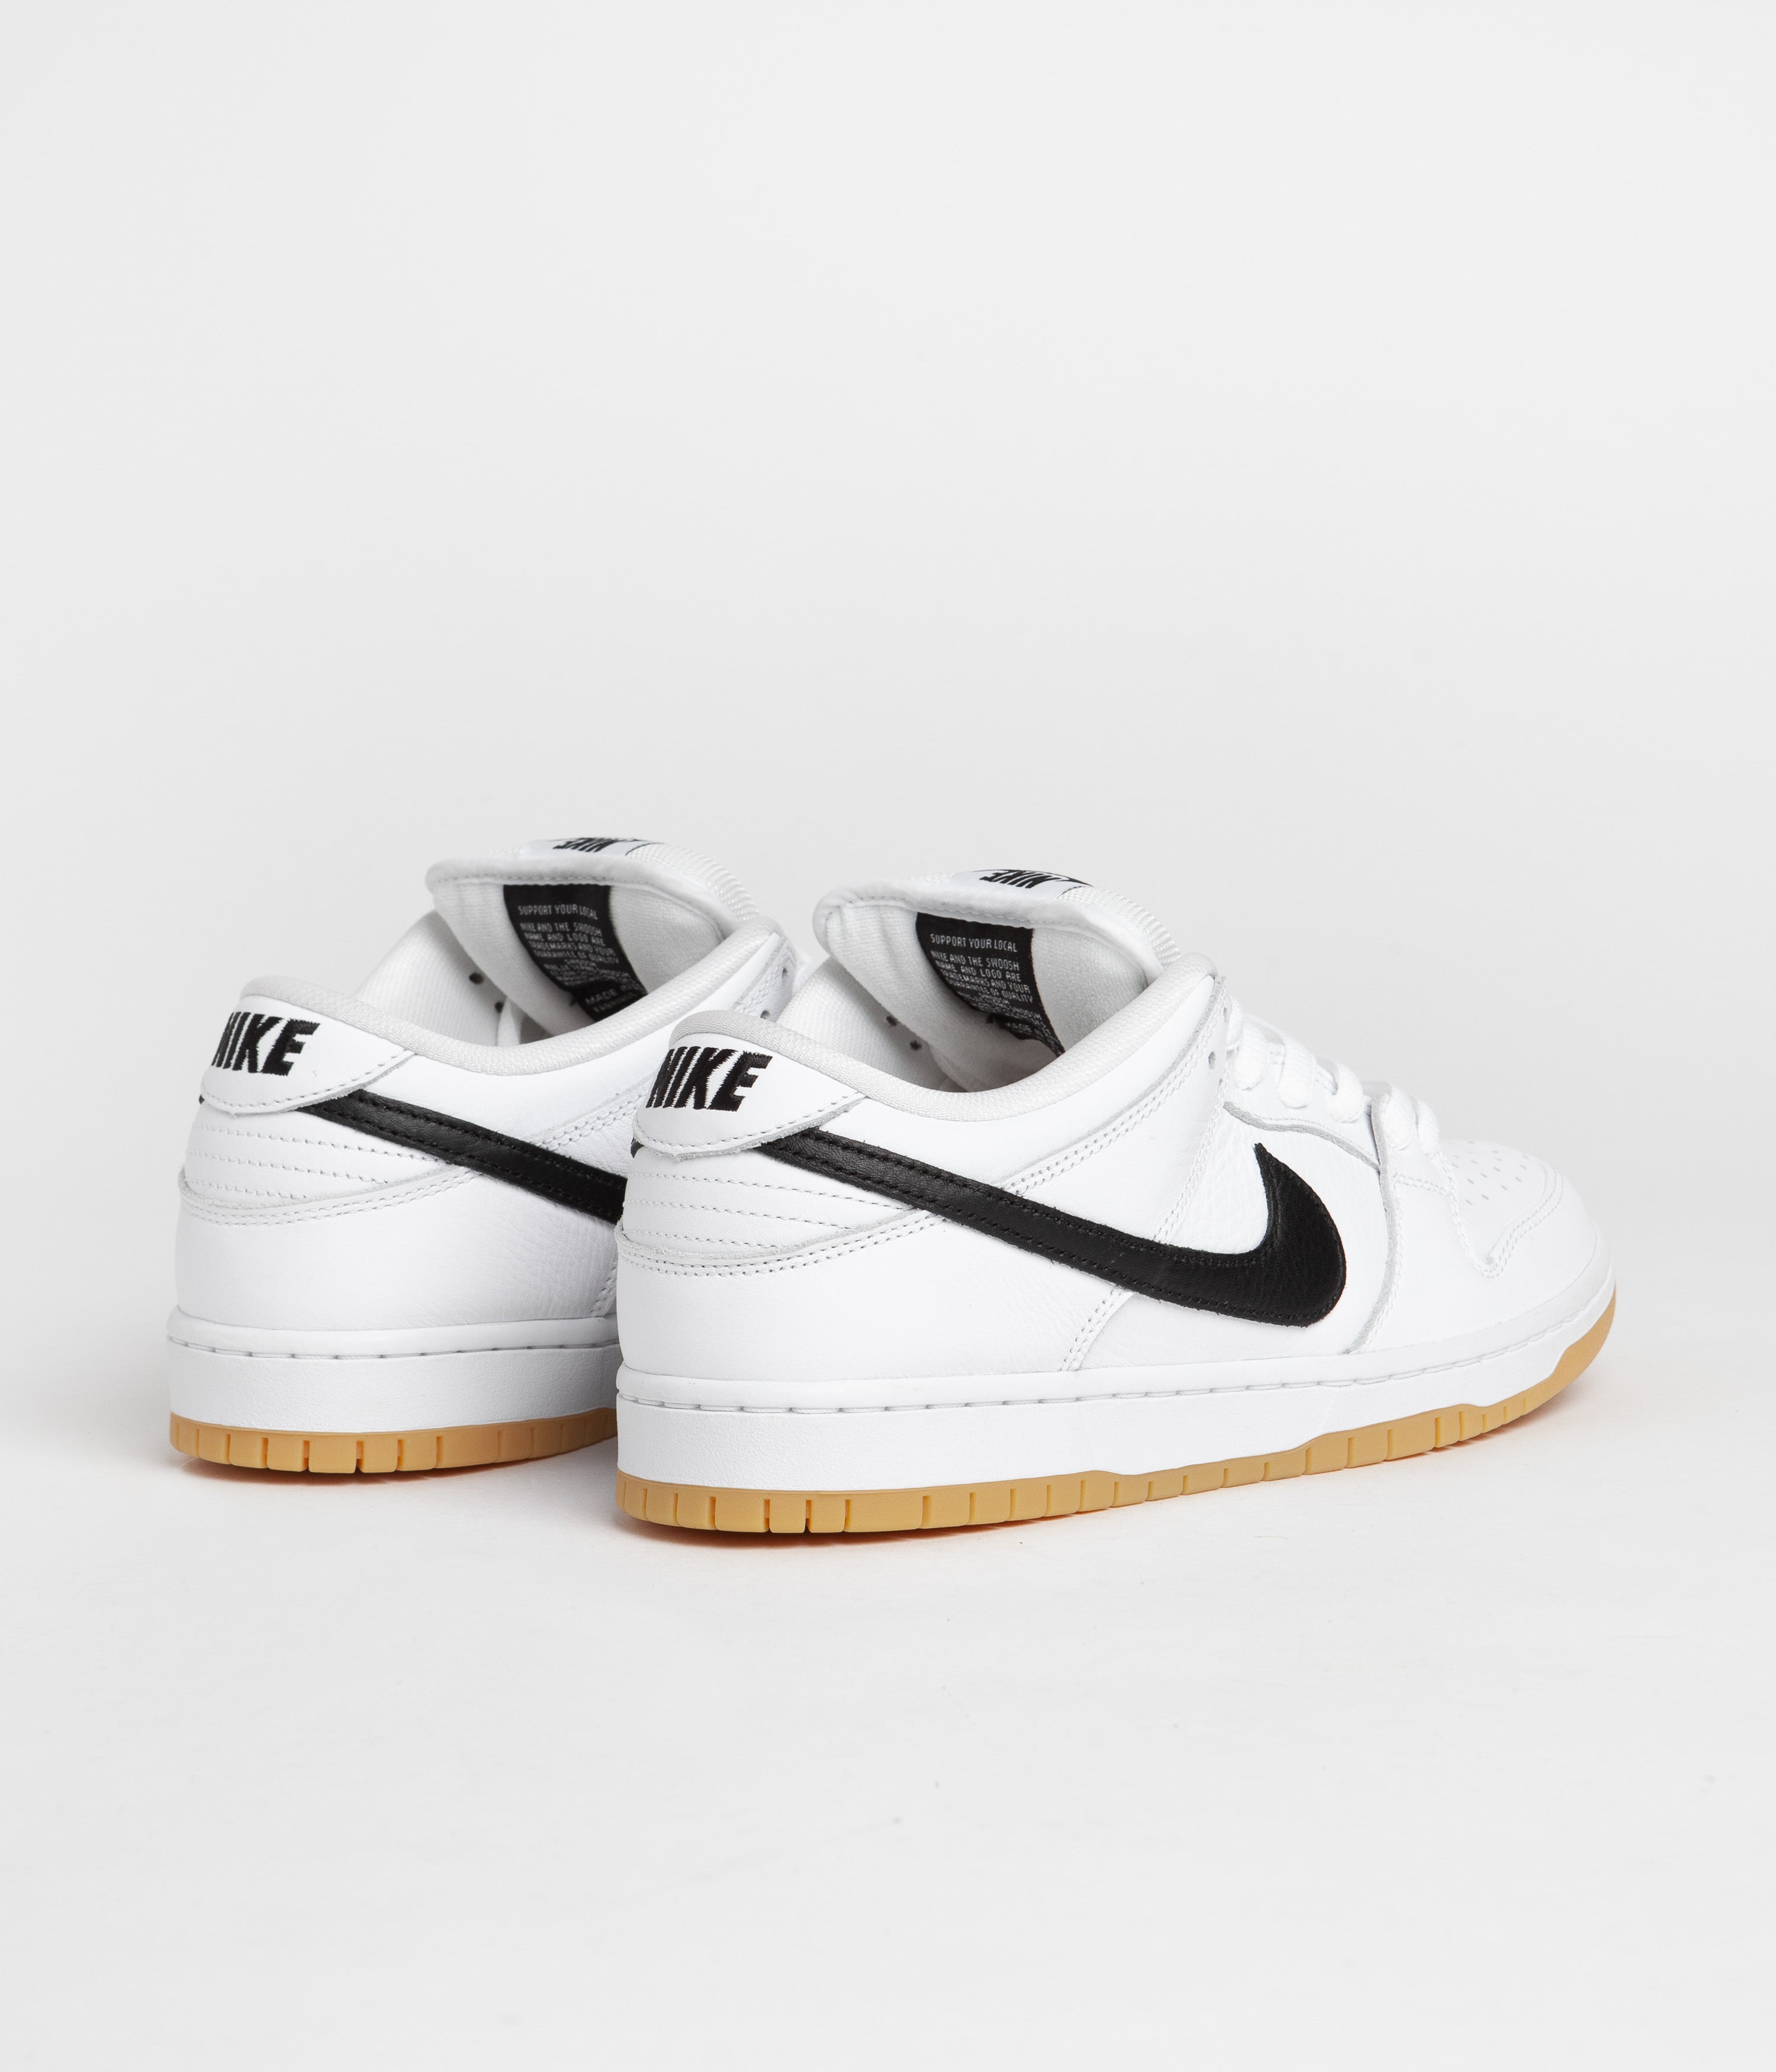 Nike SB Dunk Low Pro Shoes - White / Black - White - Gum Light ...